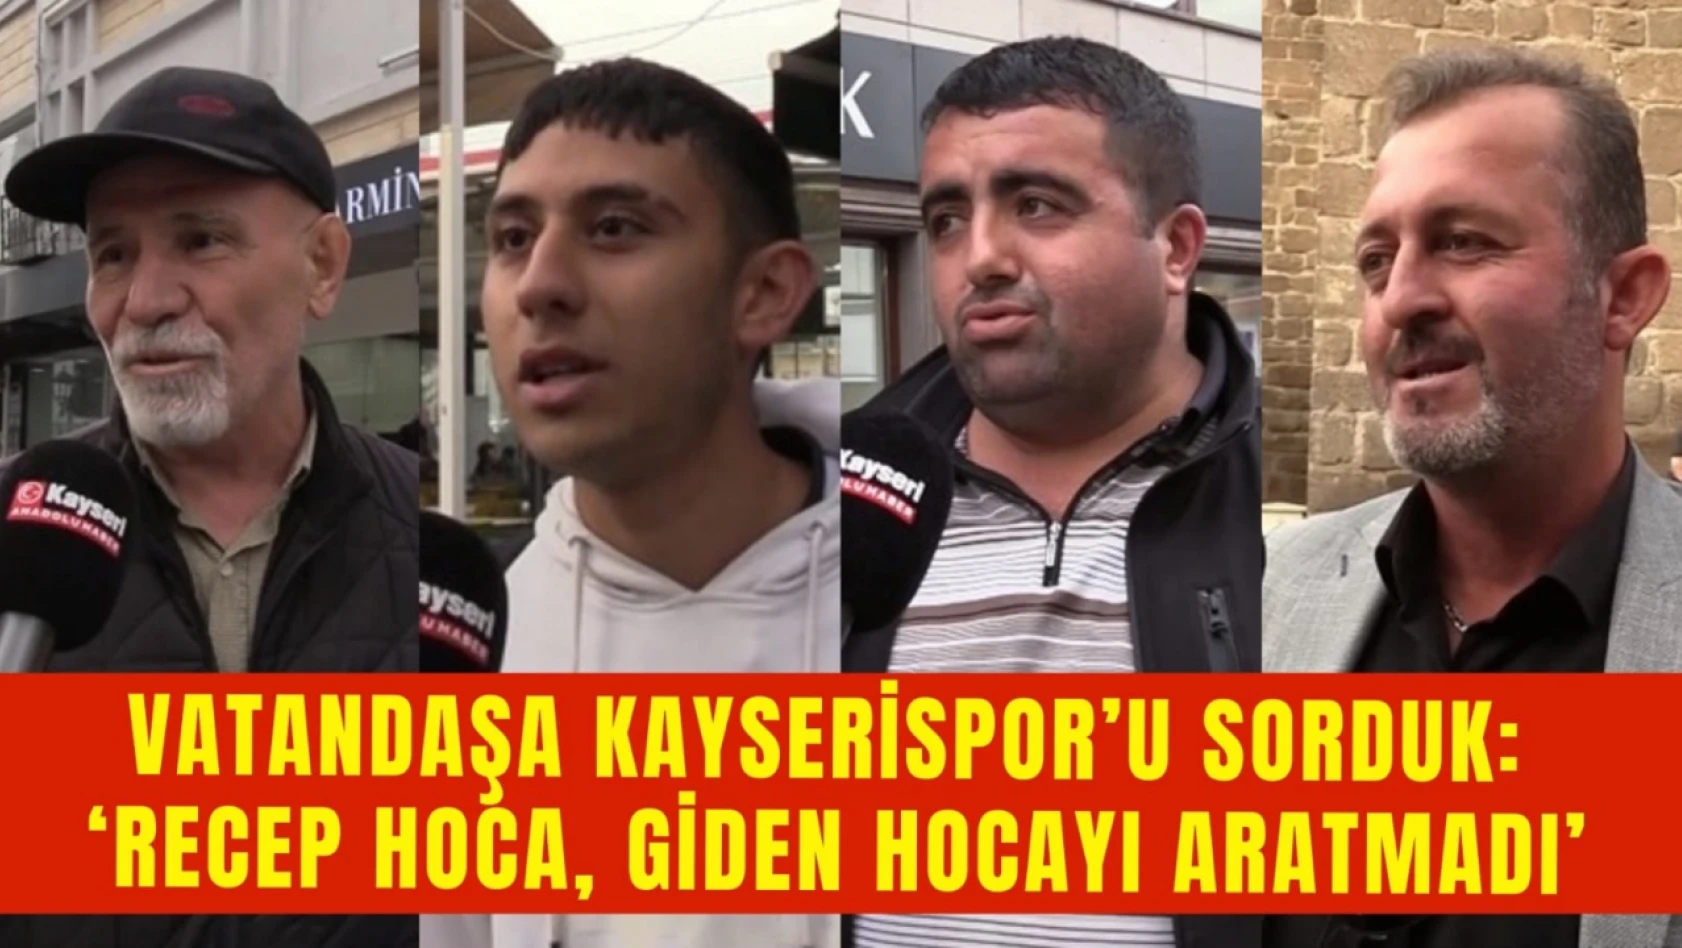 Vatandaşa Kayserispor'u sorduk: 'Recep Hoca, giden hocayı aratmadı'